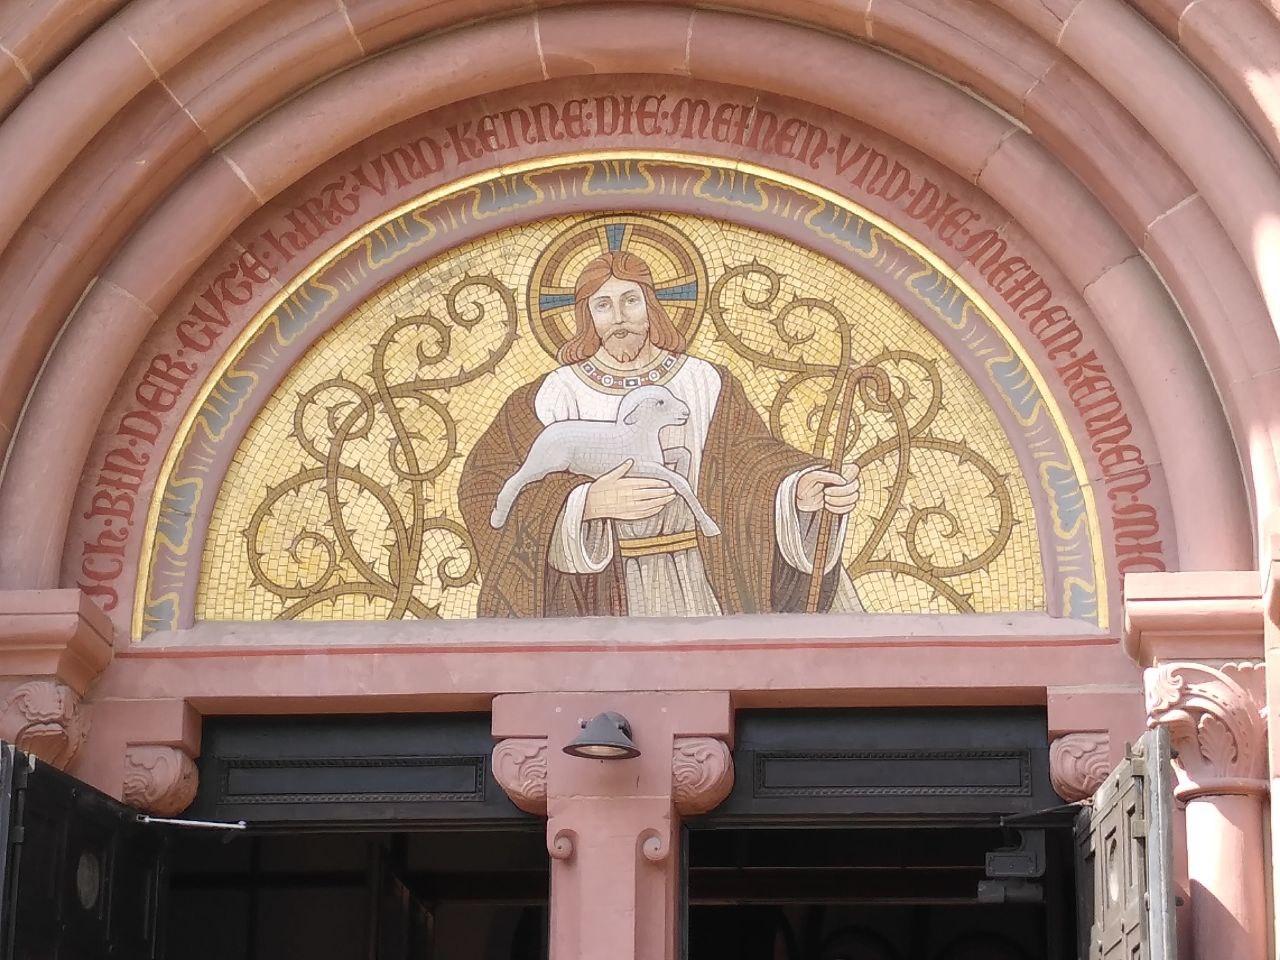 St. Bonifatius Heidelberg 2.jpg